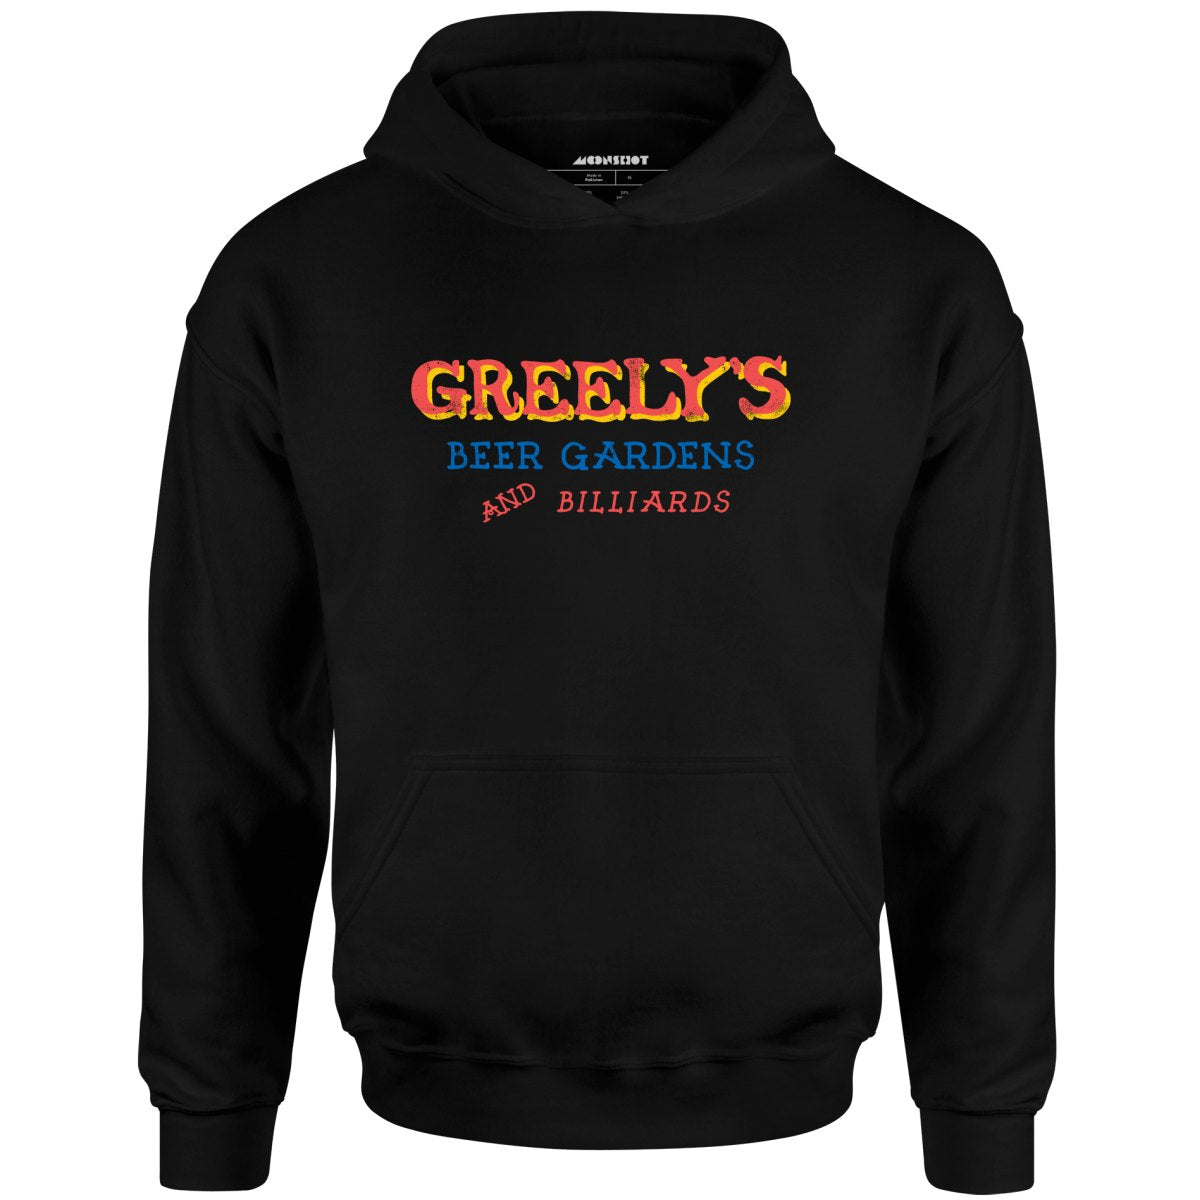 Greely's Beer Gardens & Billiards - Unisex Hoodie